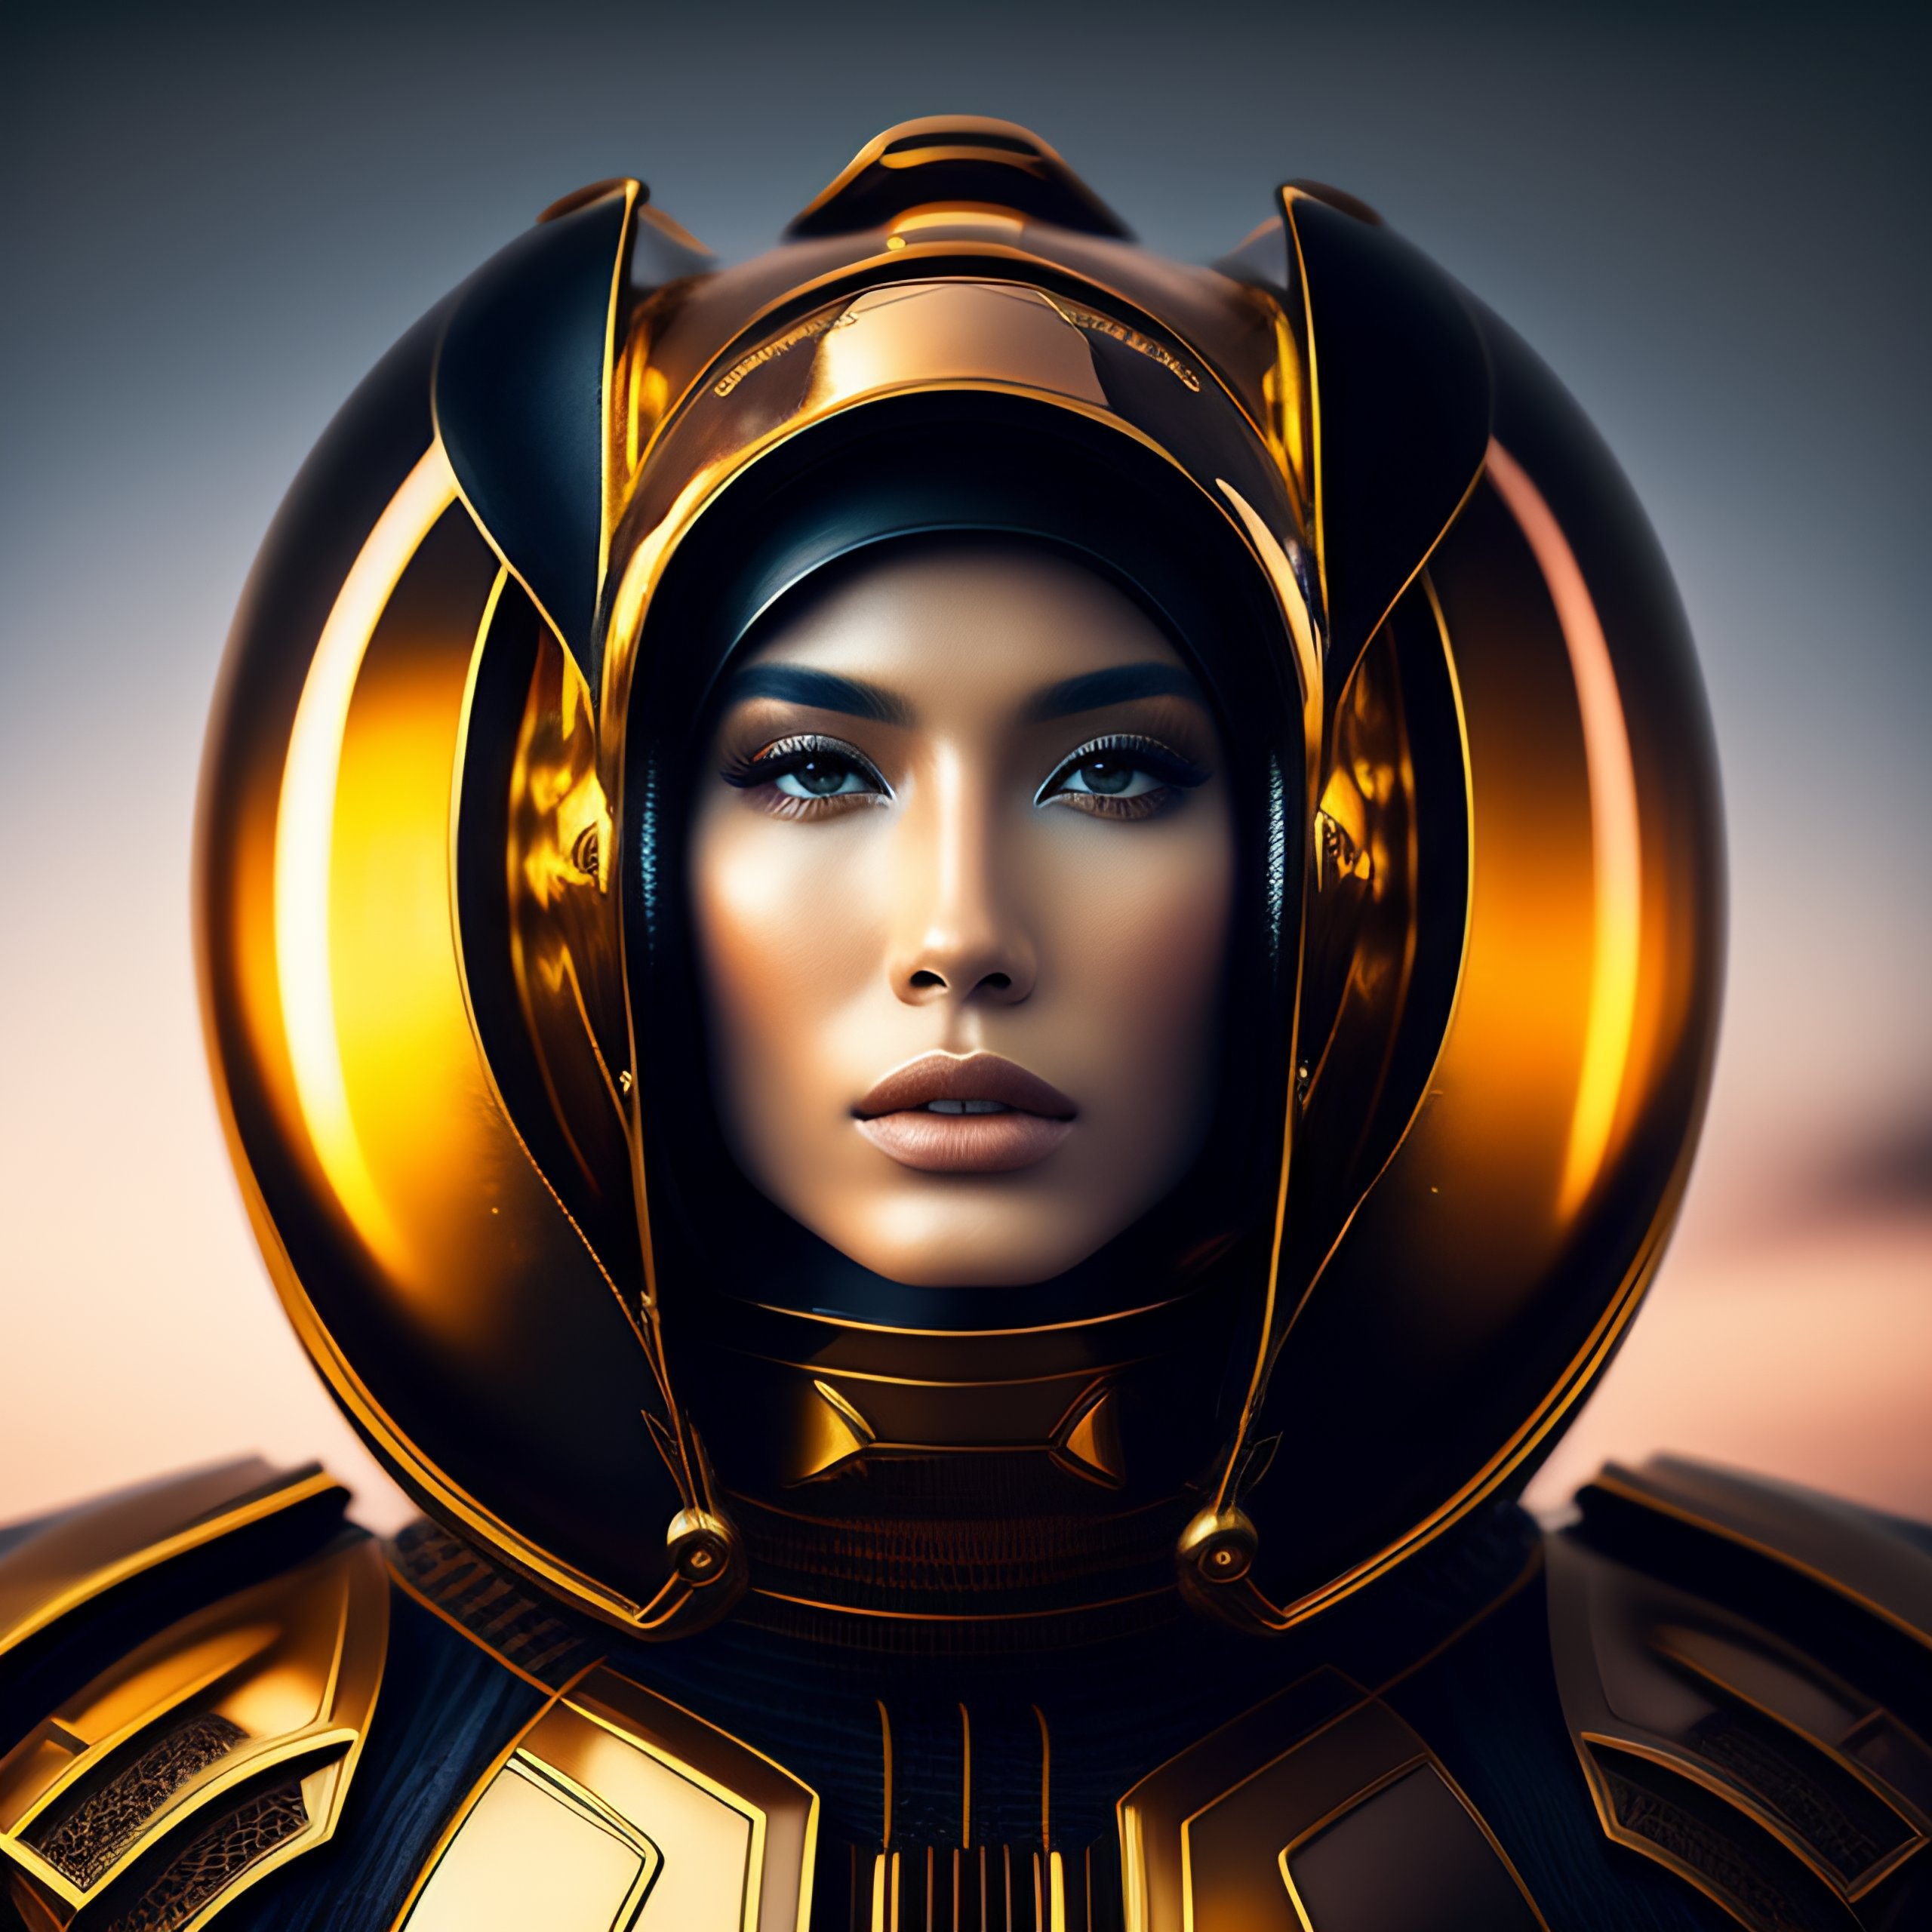 Lexica - Symmetrical portrait photograph of beautiful alien space armor